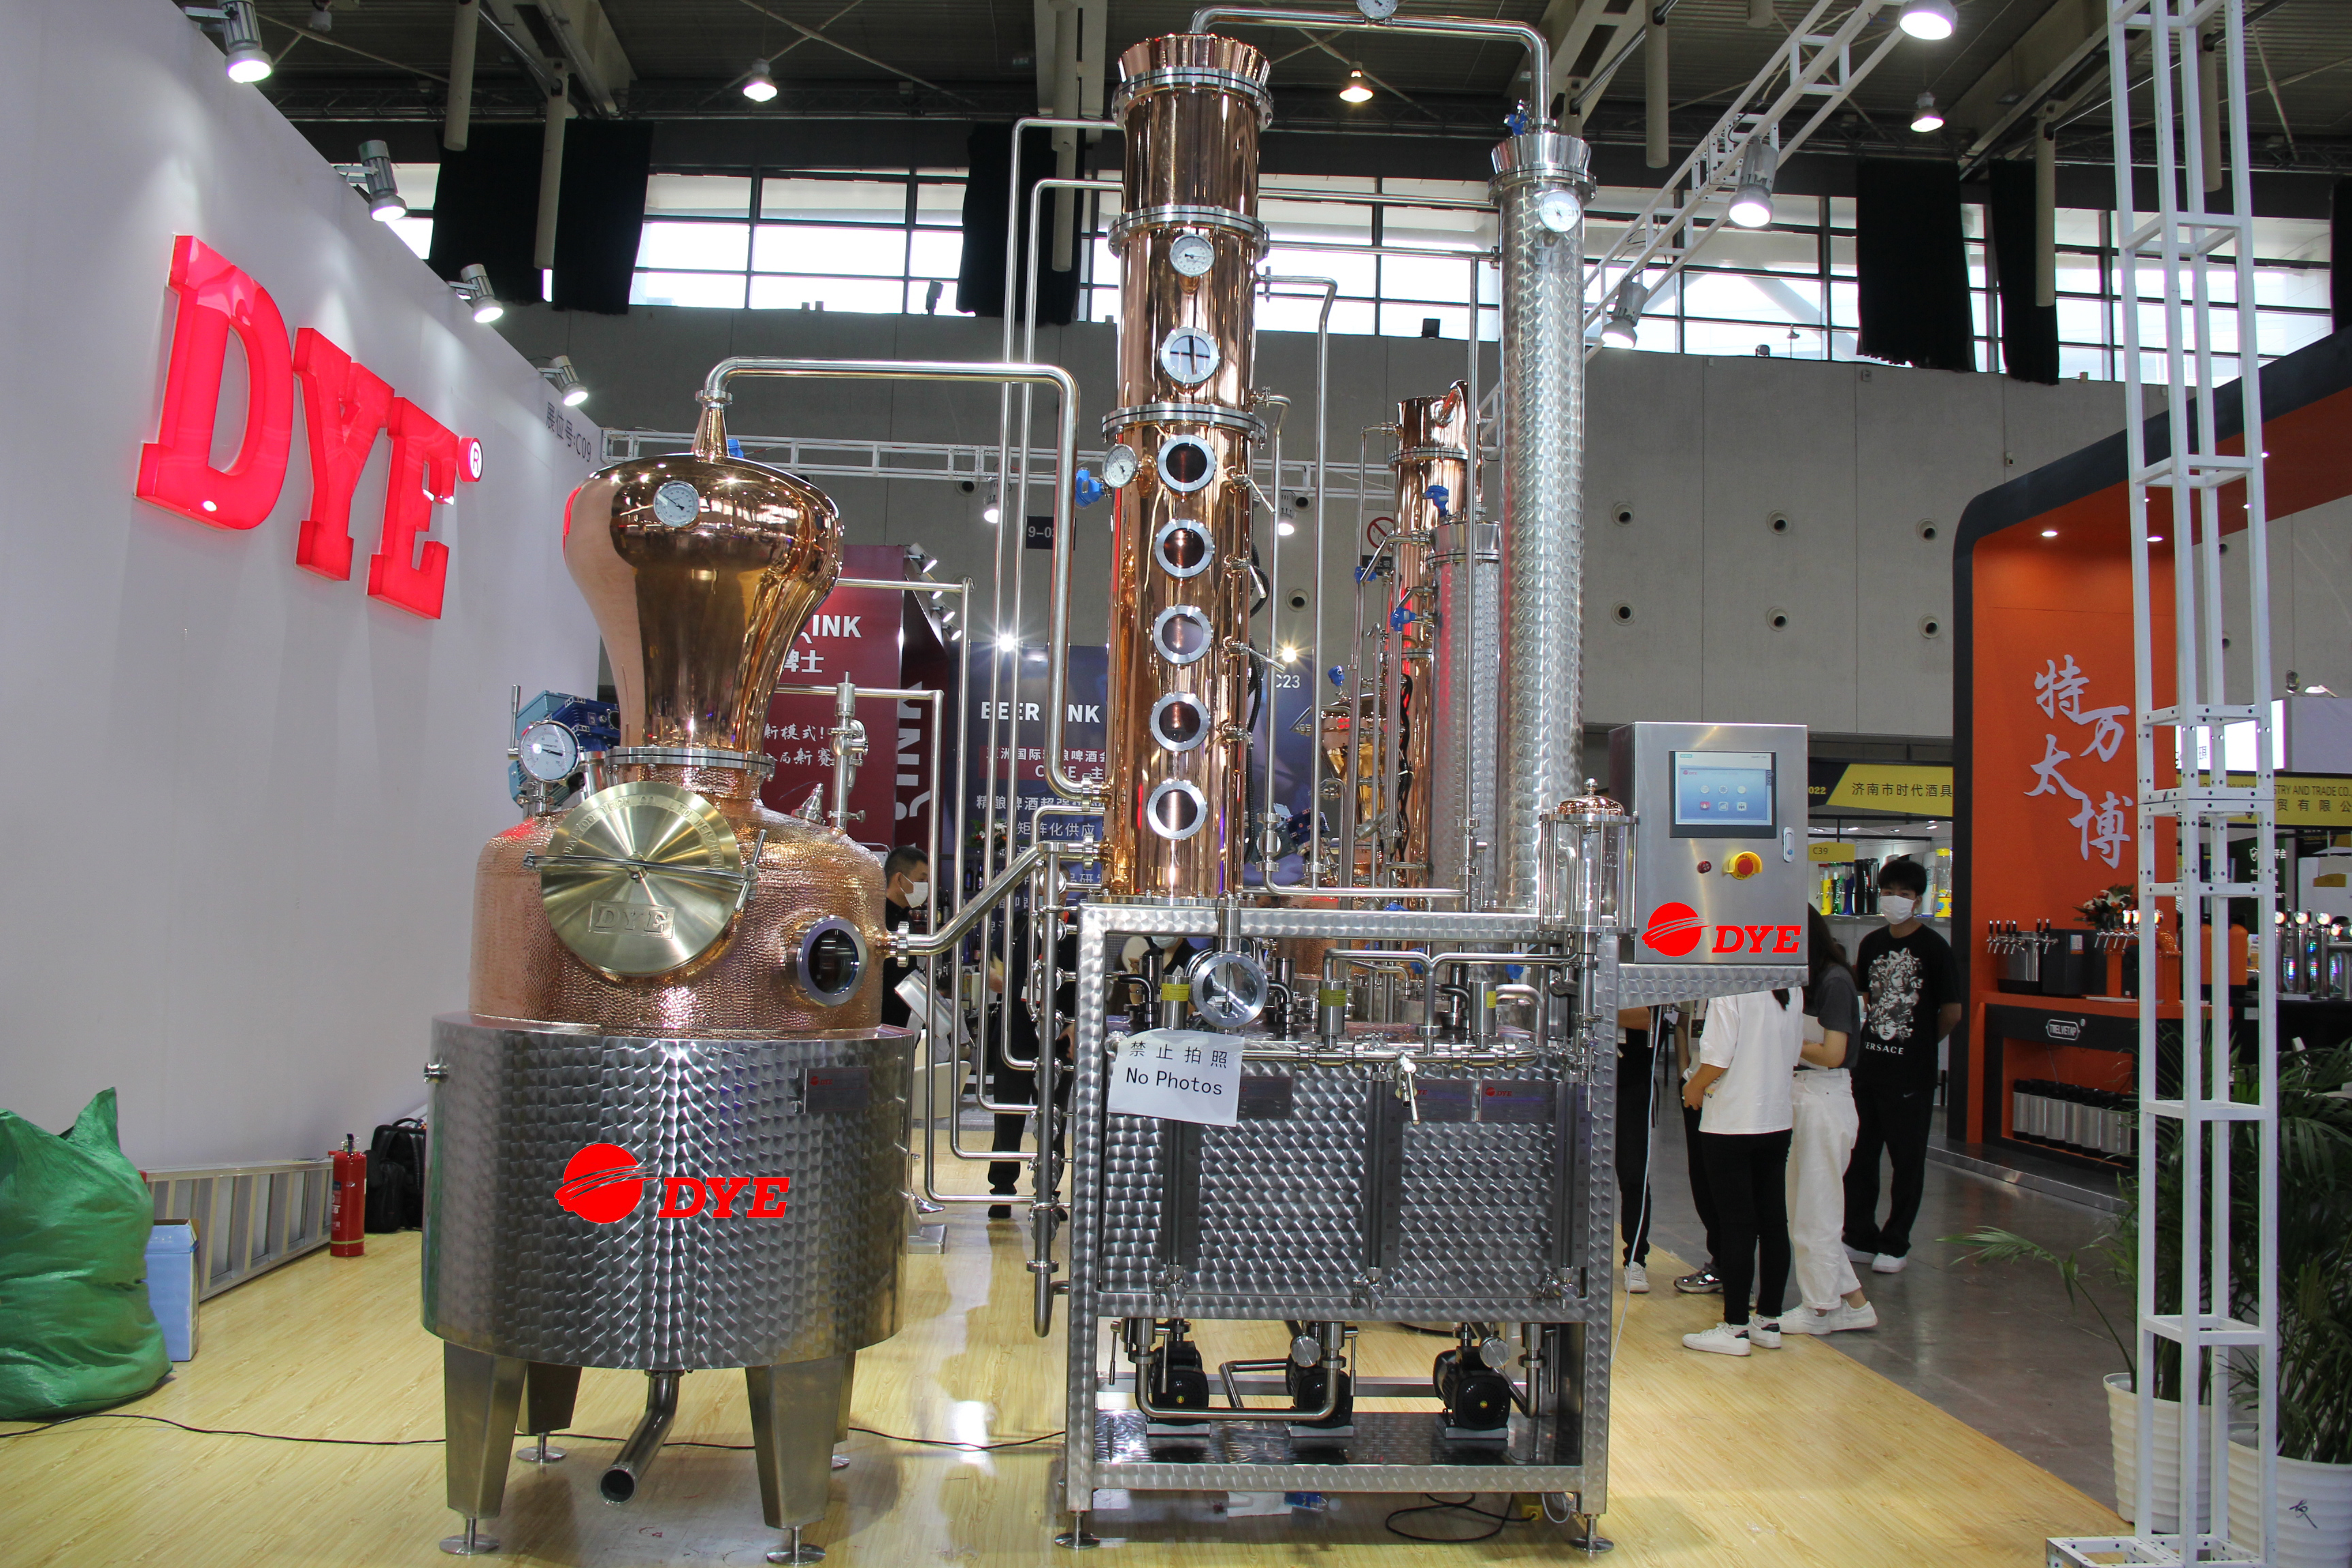 500L Semi-automatic Copper Distillation Equipment Moonshine Still